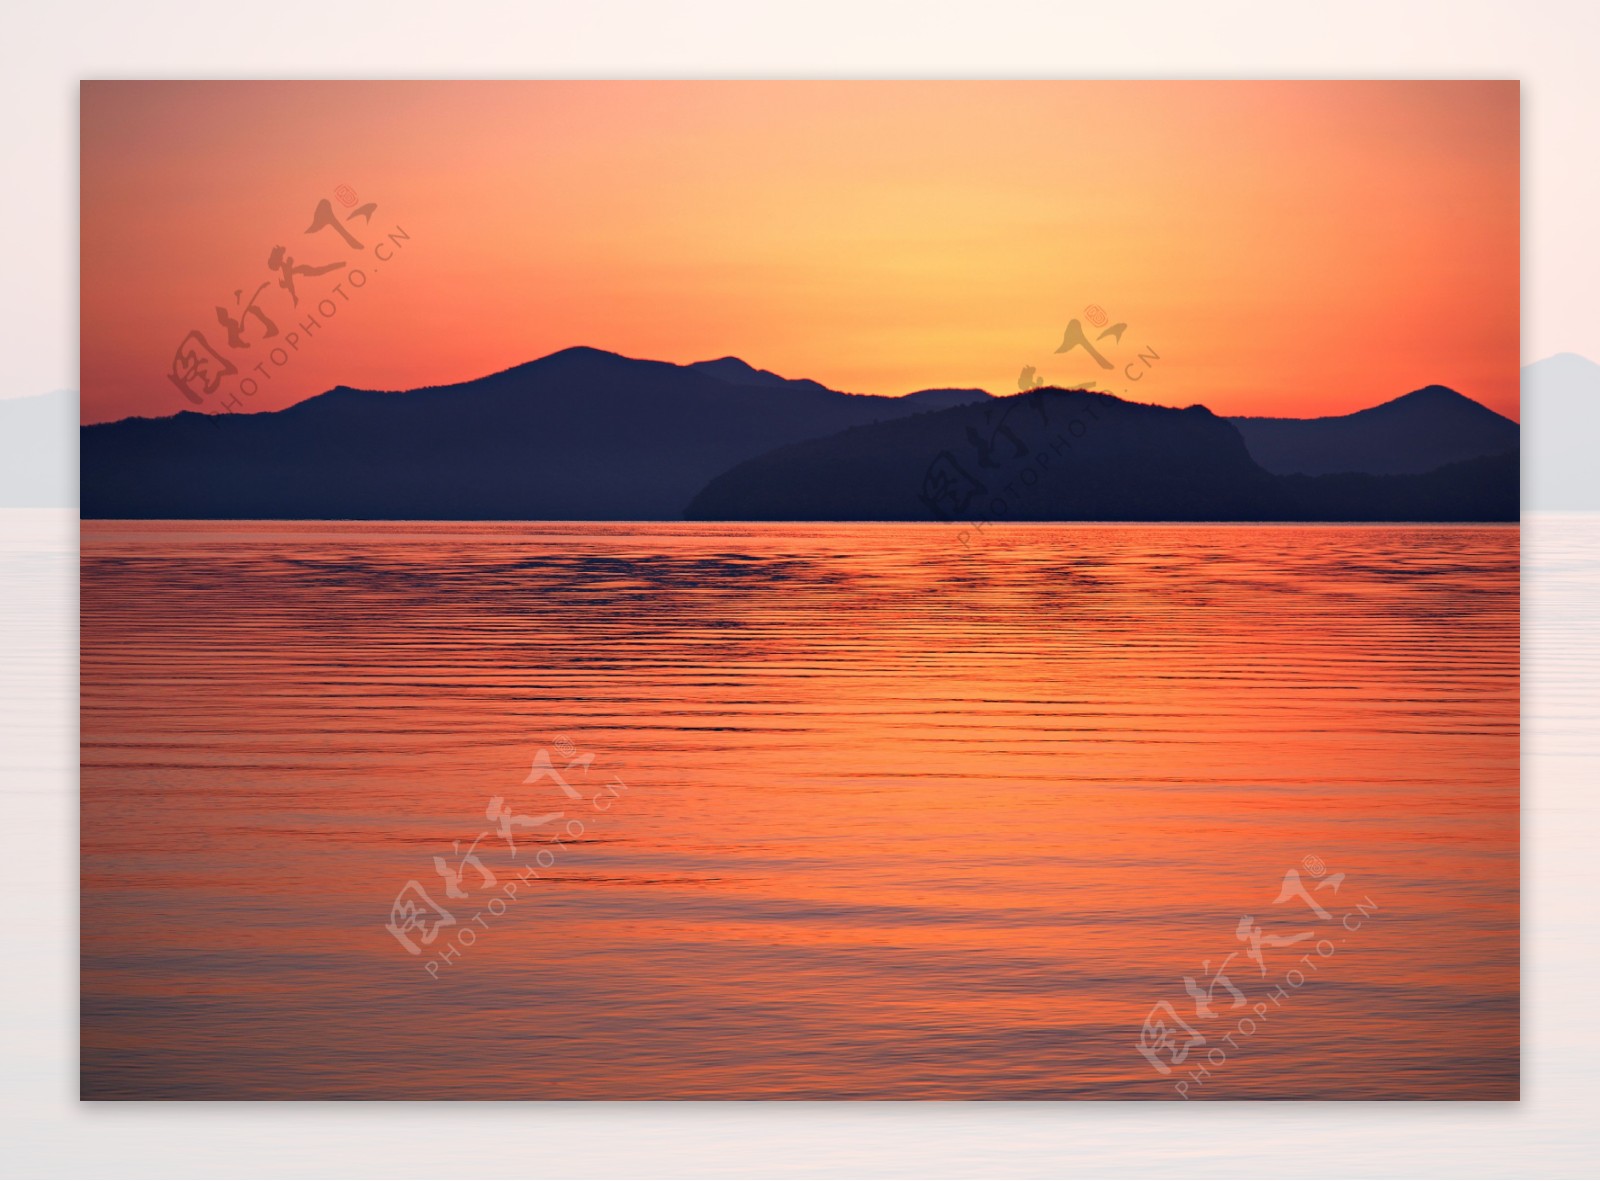 湖泊黄昏美景图片